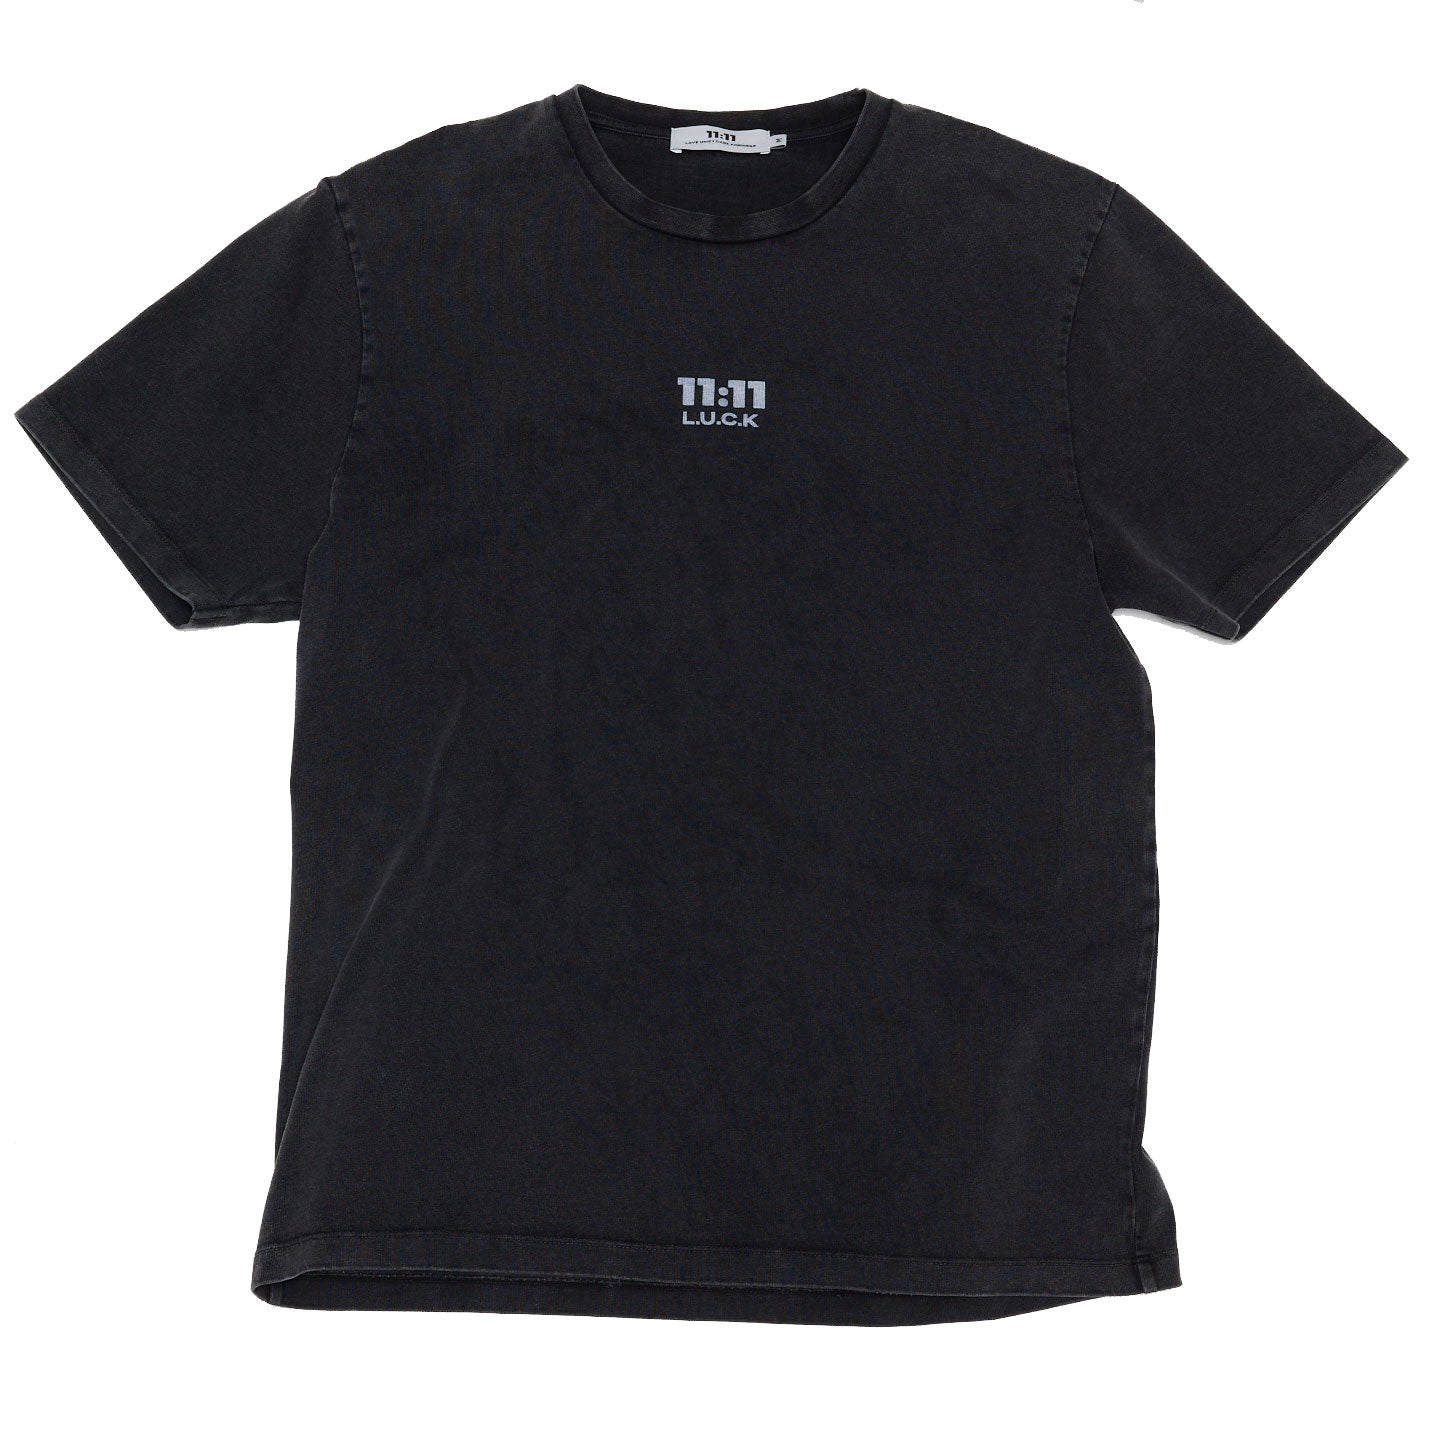 1111 luck black logo t-shirt